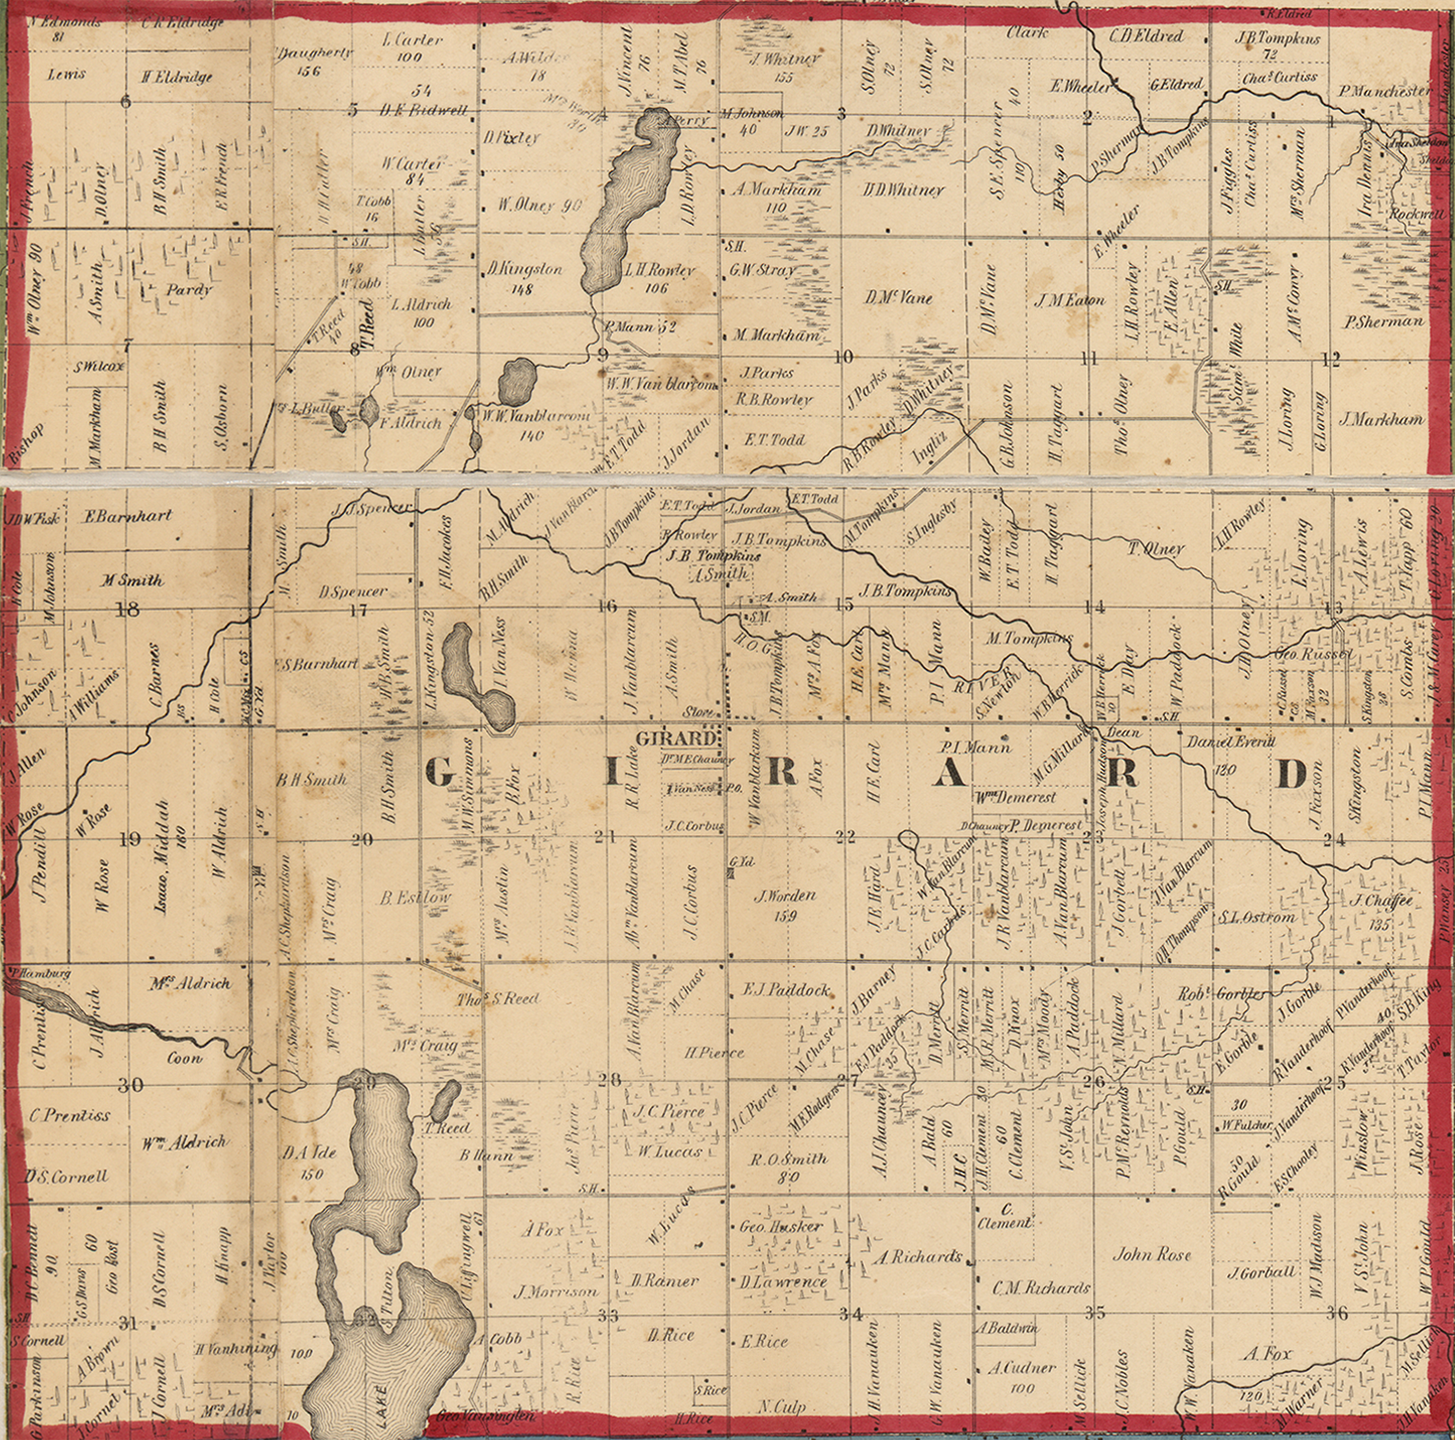 1858 Girard Township, Michigan landownership map